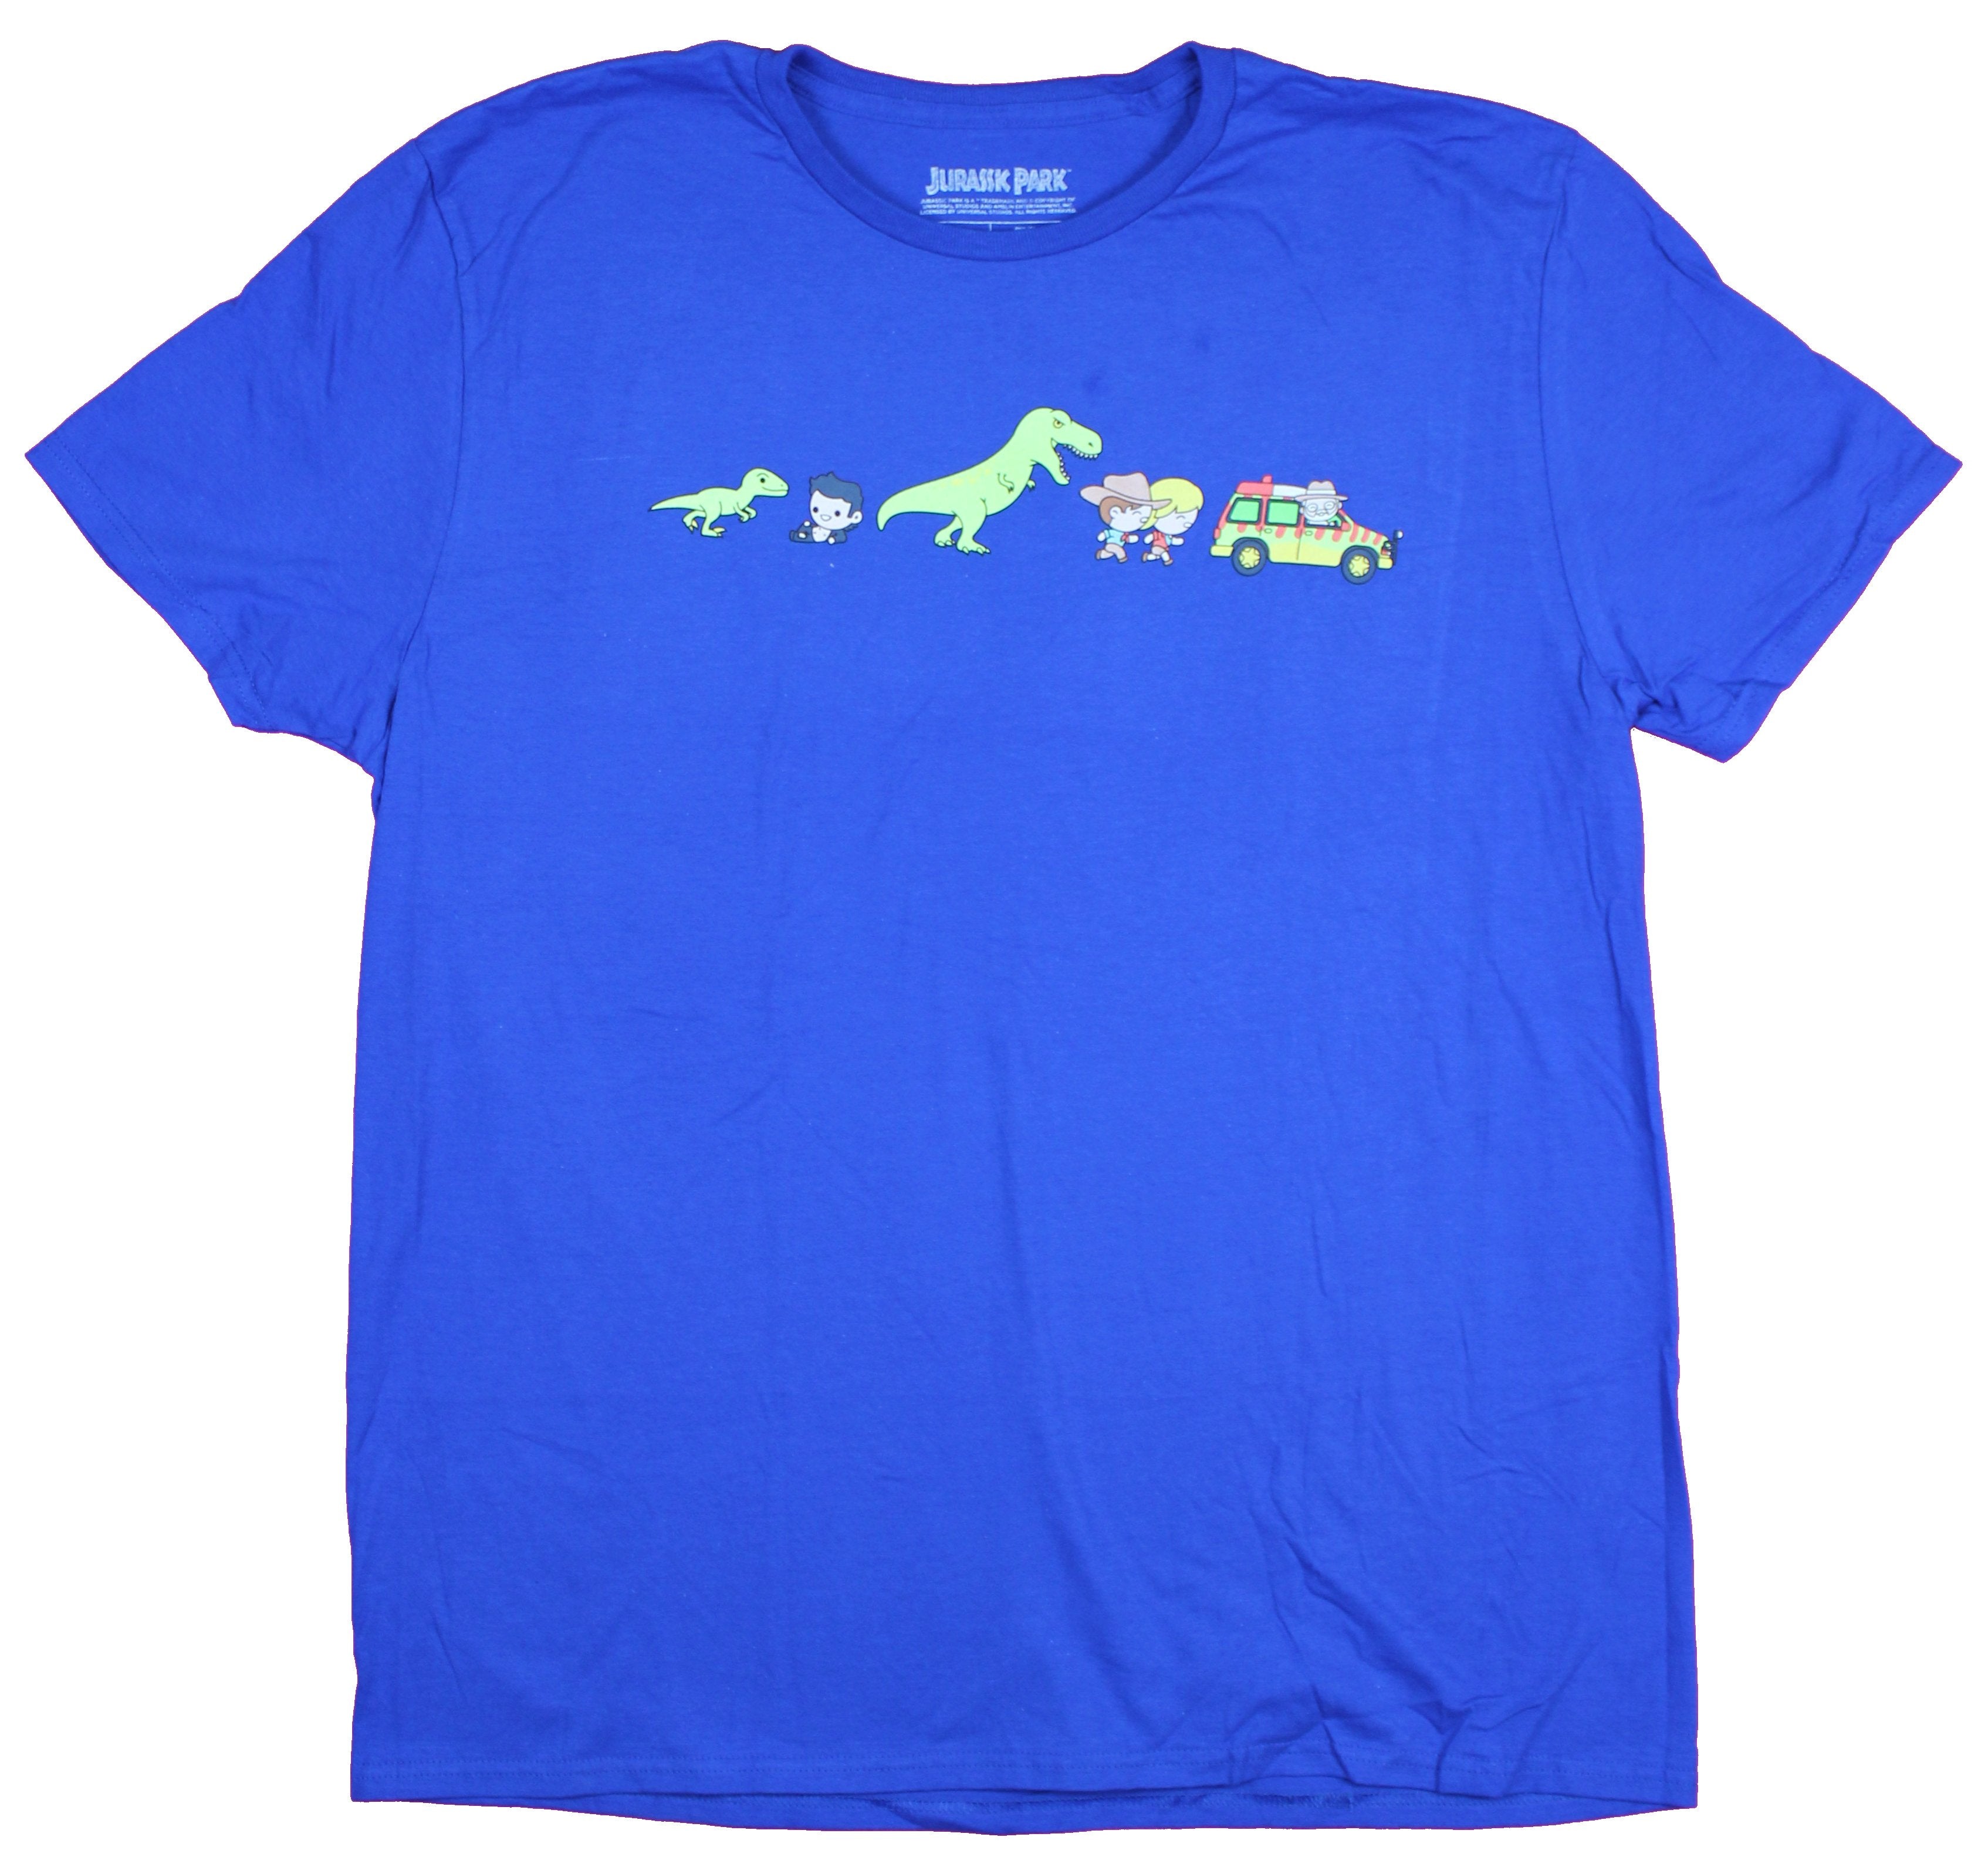 Jurassic Park Mens T-Shirt- Chibi Style Dinosaur Cutsie Chase Image